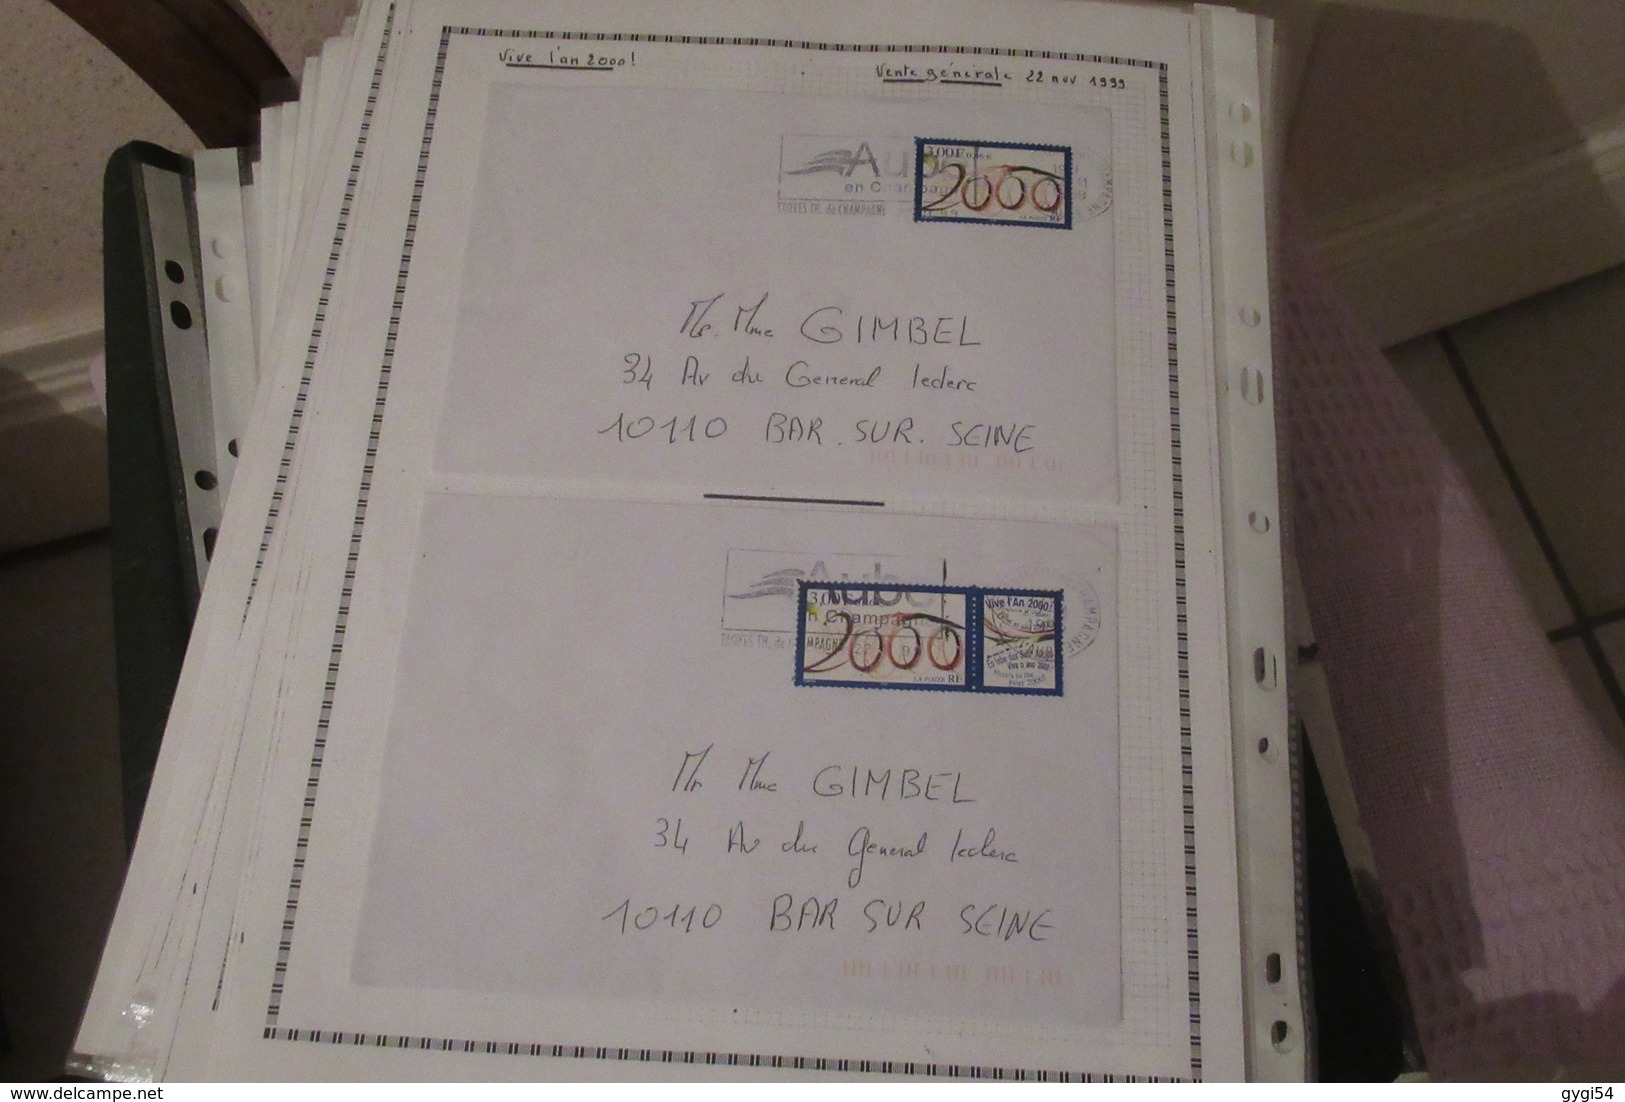 France lettres avec timbres Oblitérés de l' année 2000 34 scans